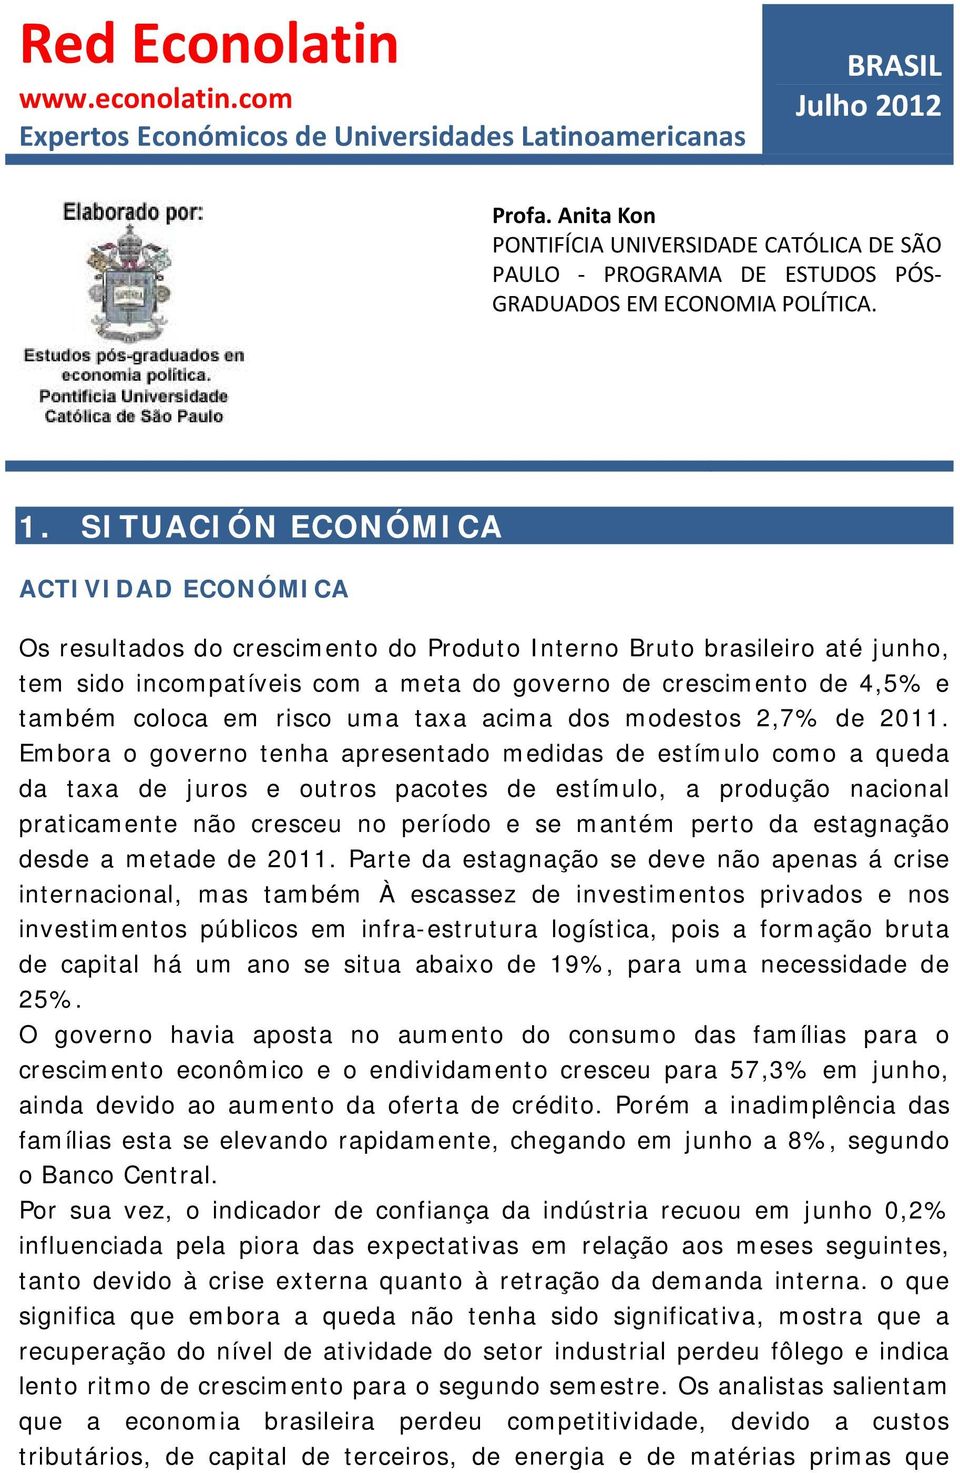 SITUACIÓN ECONÓMICA ACTIVIDAD ECONÓMICA Os resultados do crescimento do Produto Interno Bruto brasileiro até junho, tem sido incompatíveis com a meta do governo de crescimento de 4,5% e também coloca